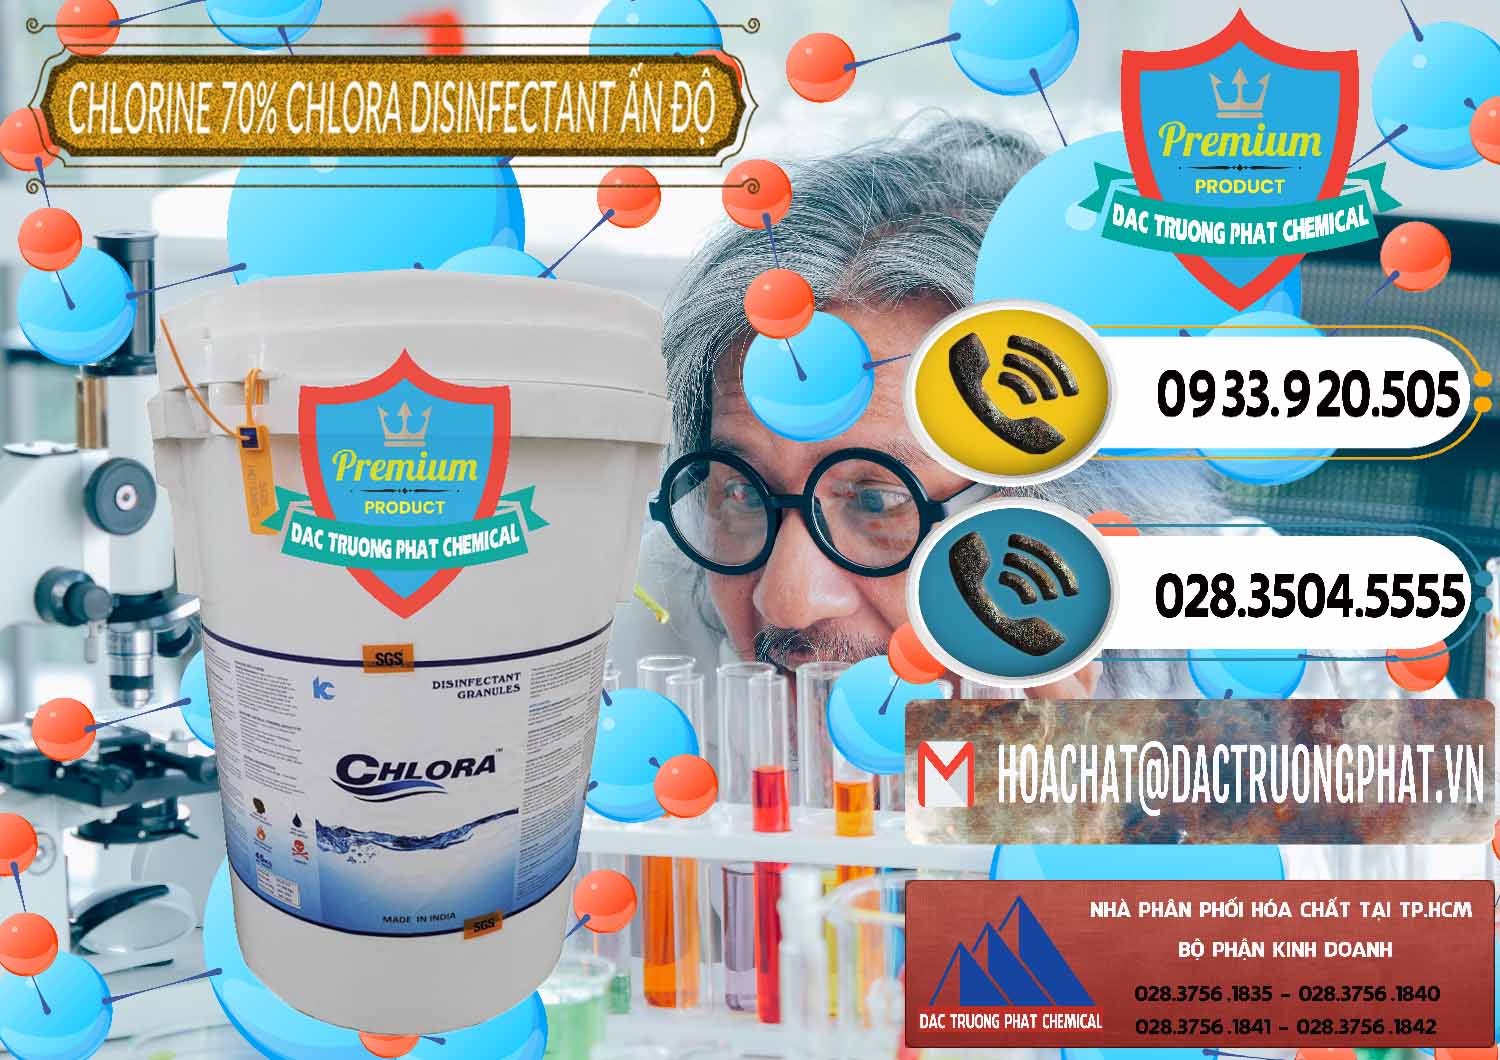 Đơn vị chuyên kinh doanh _ bán Chlorine – Clorin 70% Chlora Disinfectant Ấn Độ India - 0213 - Kinh doanh & cung cấp hóa chất tại TP.HCM - hoachatdetnhuom.vn